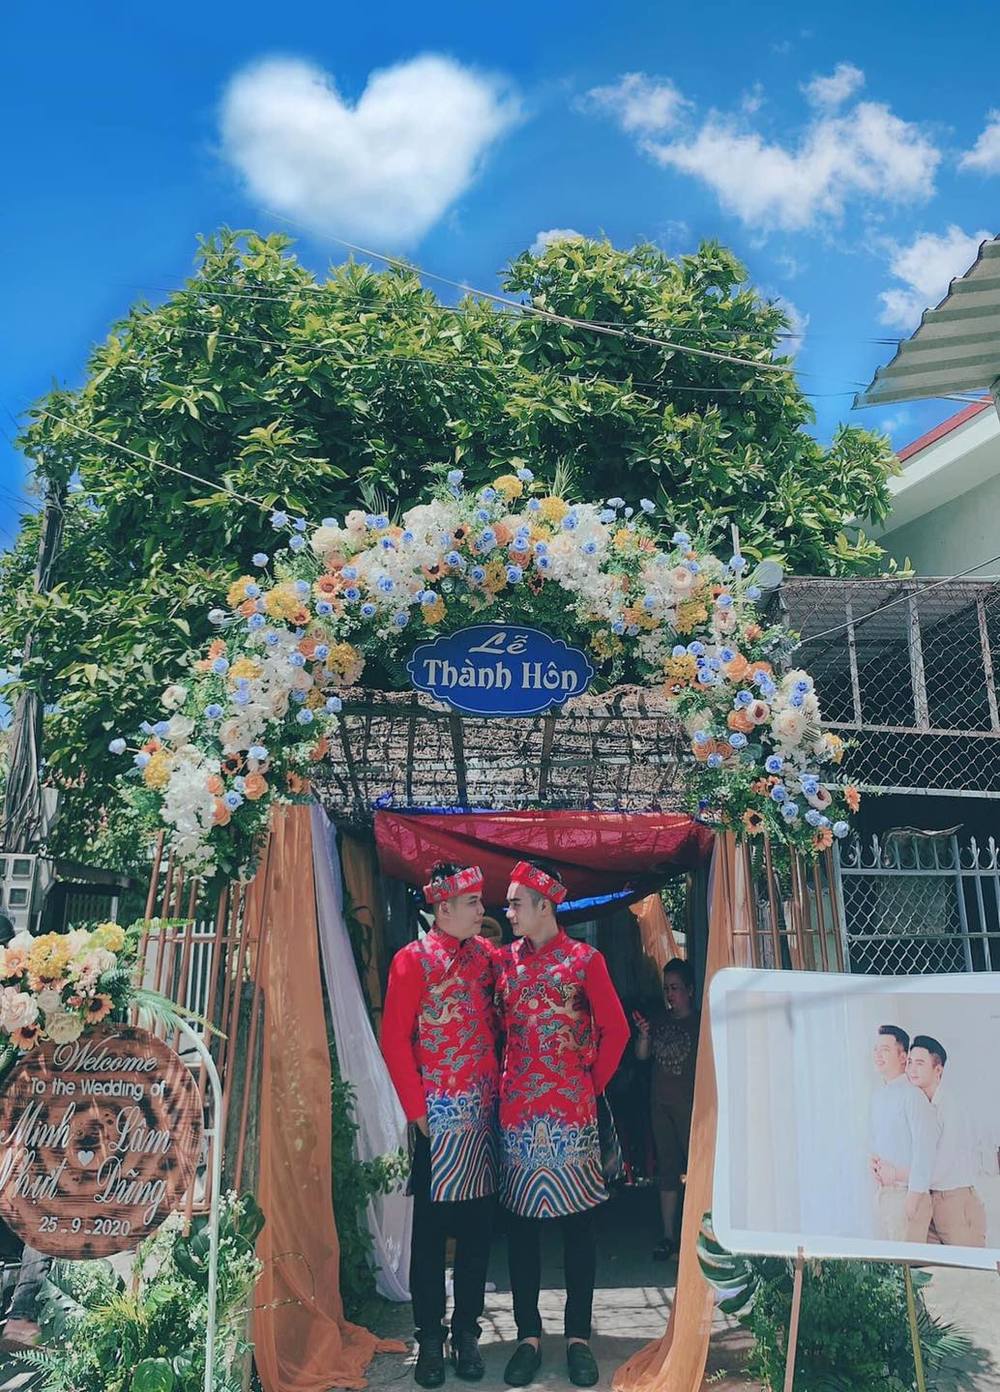  
Cặp đôi nổi tiếng Tây Ninh cũng có đám cưới gây sốt cộng đồng mạng. (Ảnh: Vietnamnet)